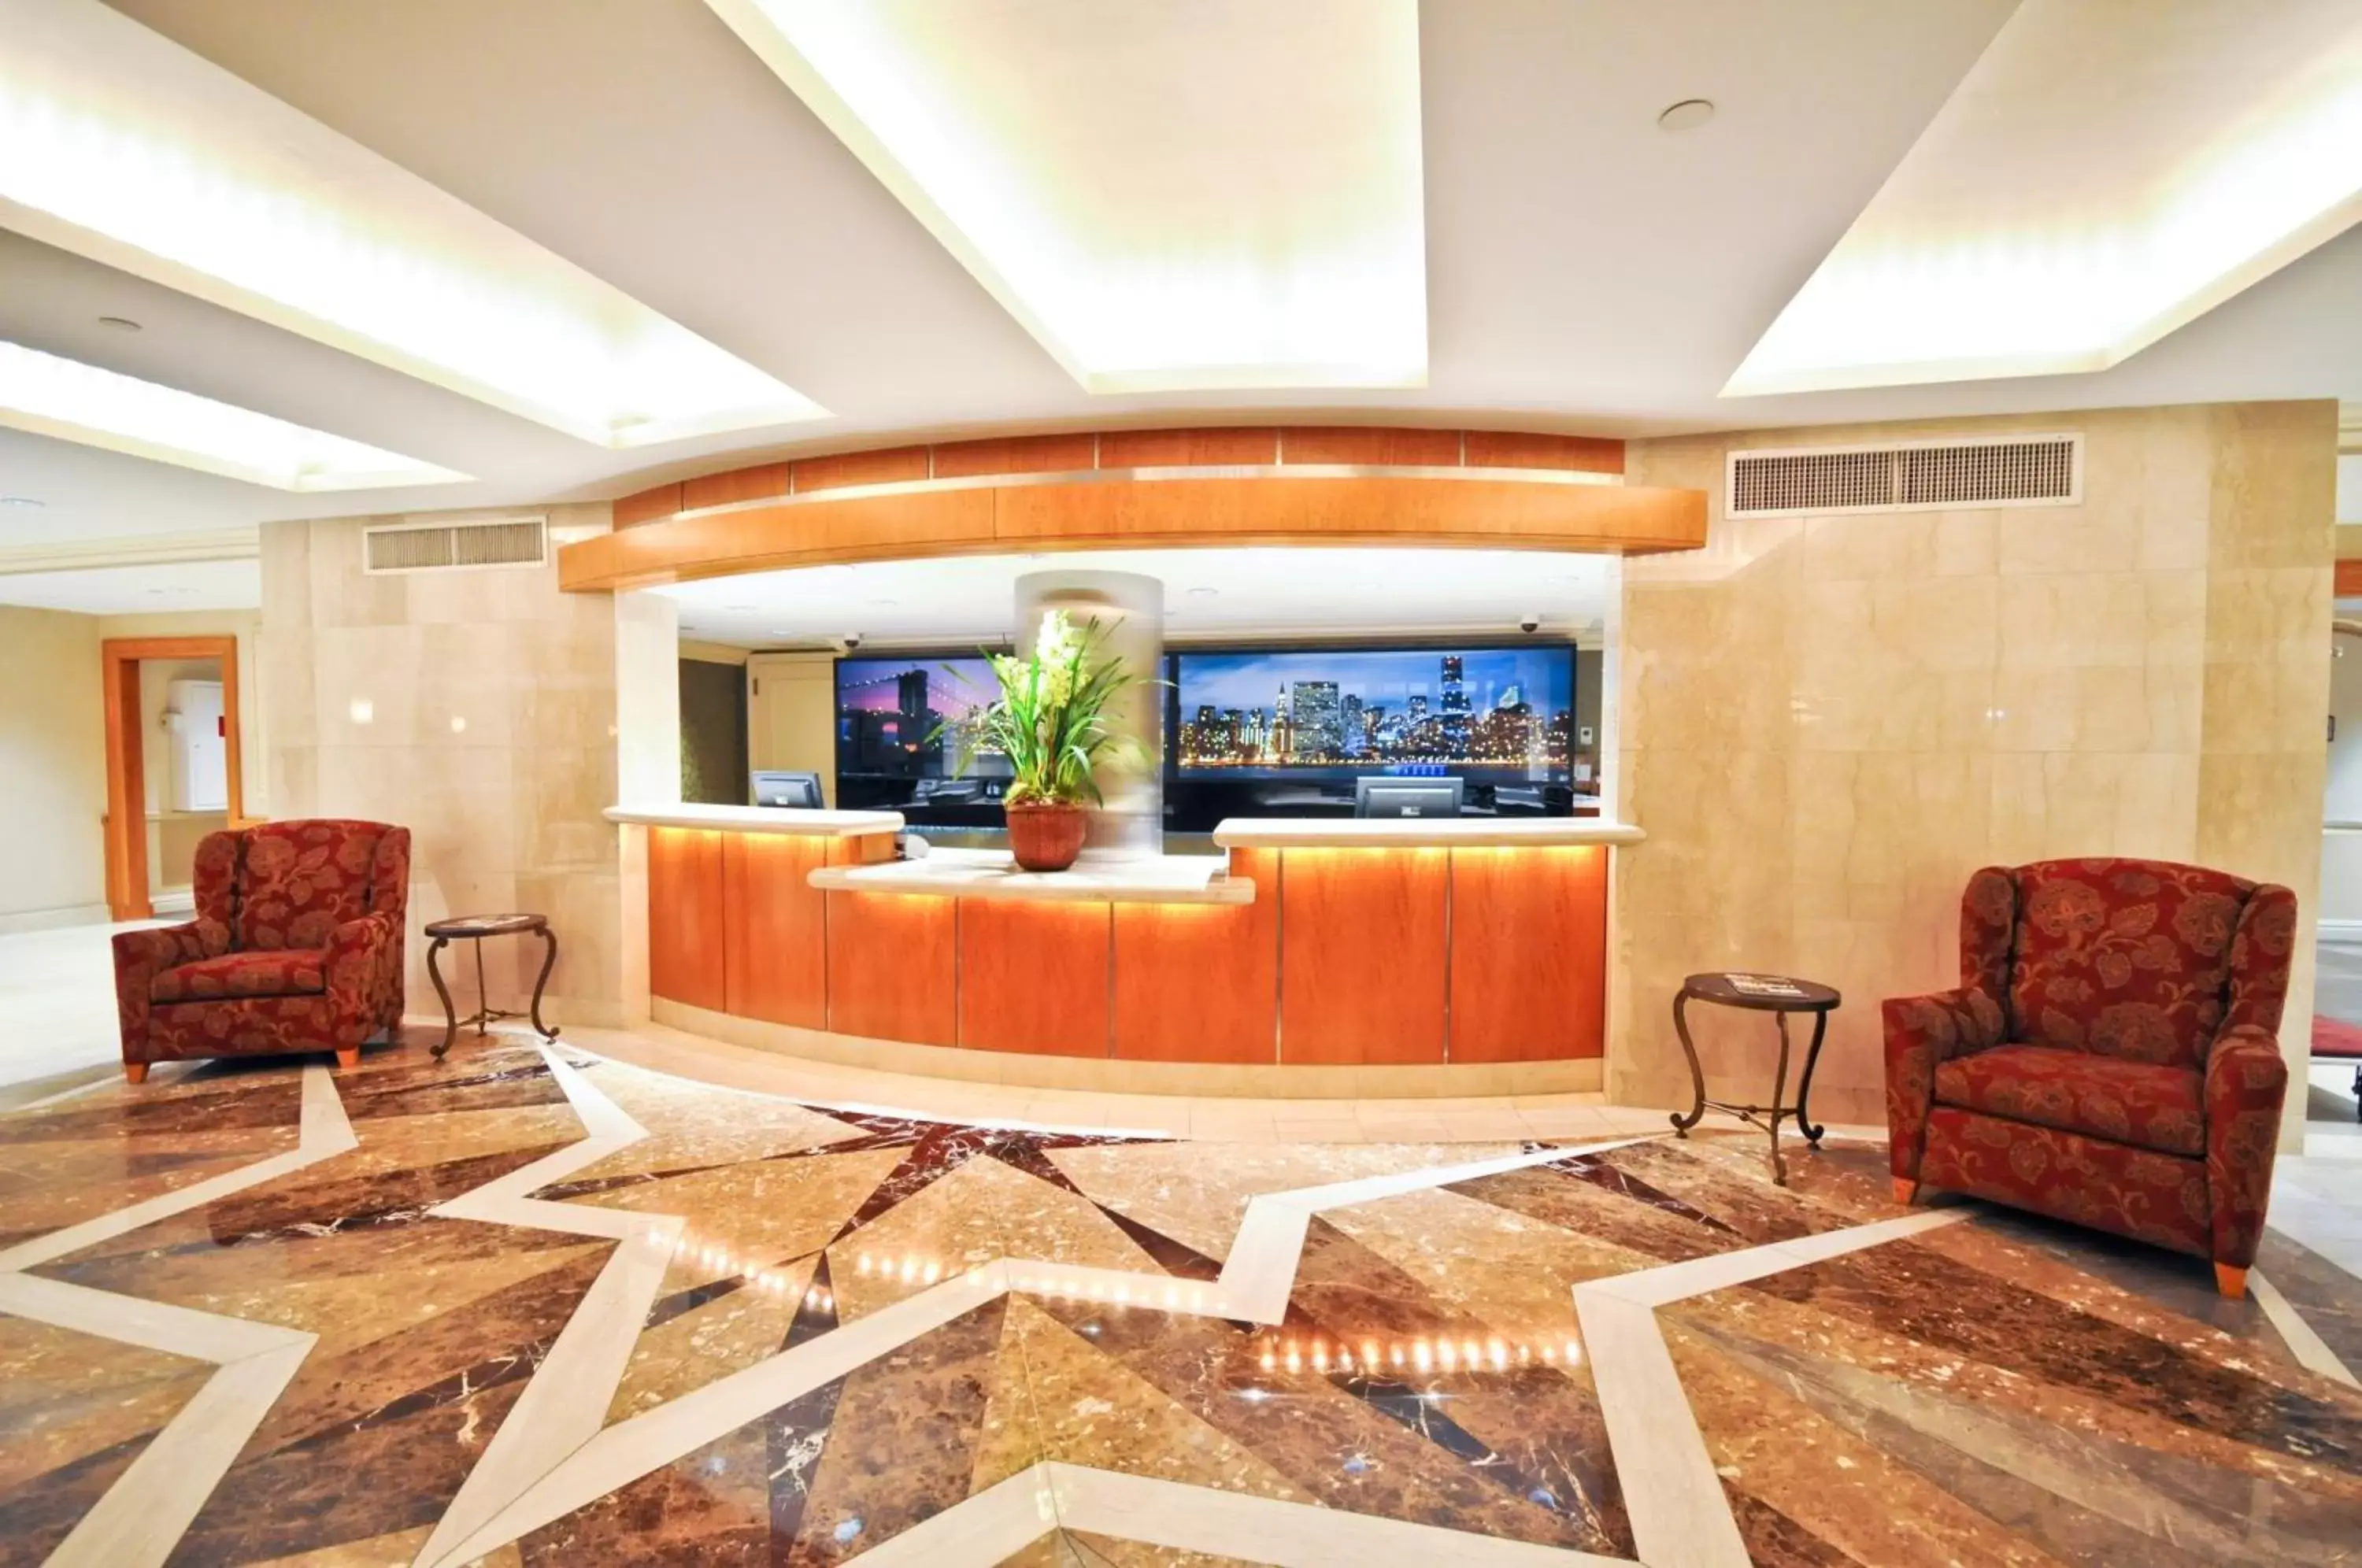 Lobby or reception, Lobby/Reception in San Carlos Hotel New York